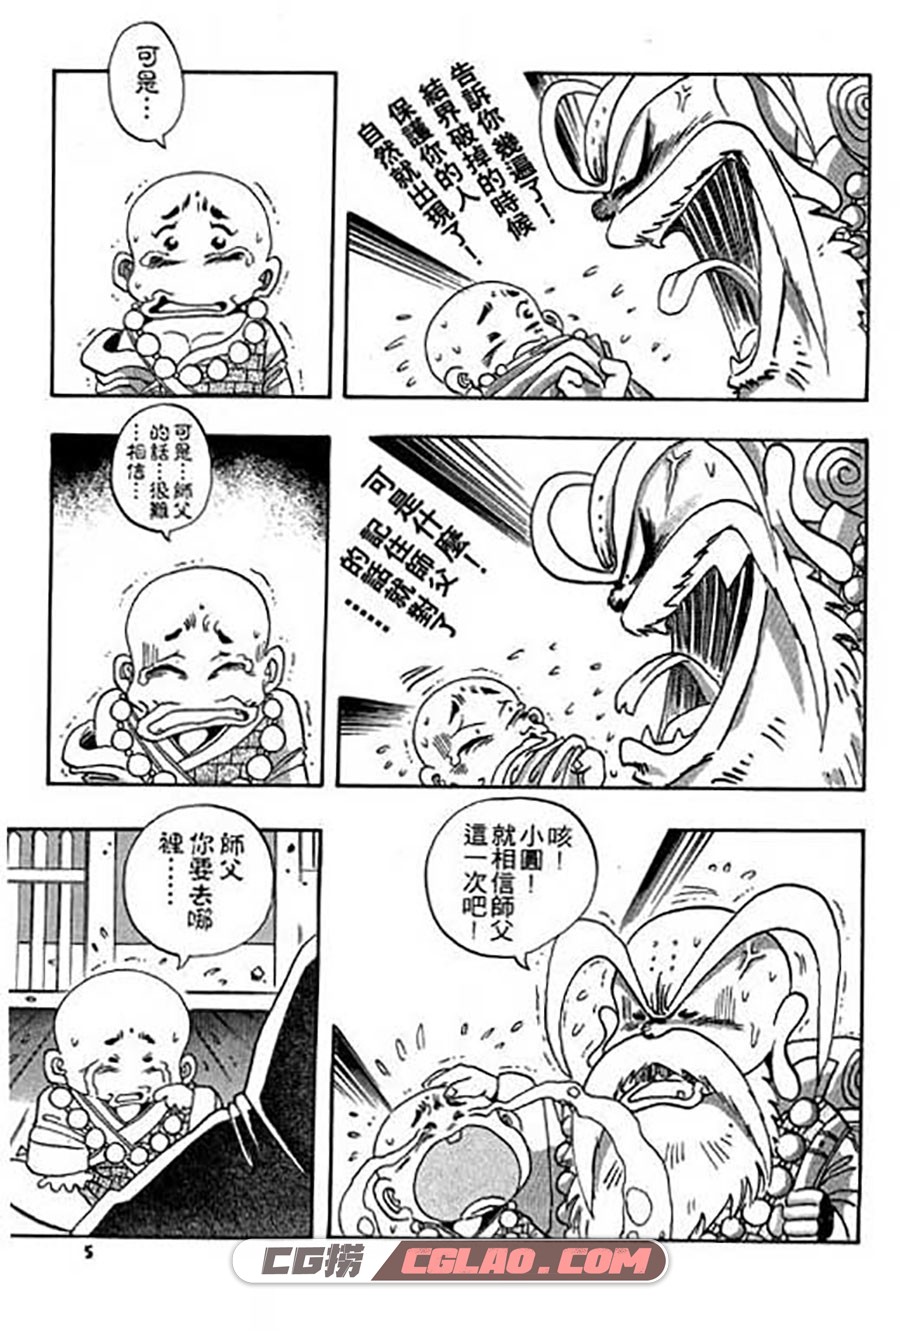 小和尚 赖有贤 1-28册 漫画全集下载 百度网盘,001_005.jpg